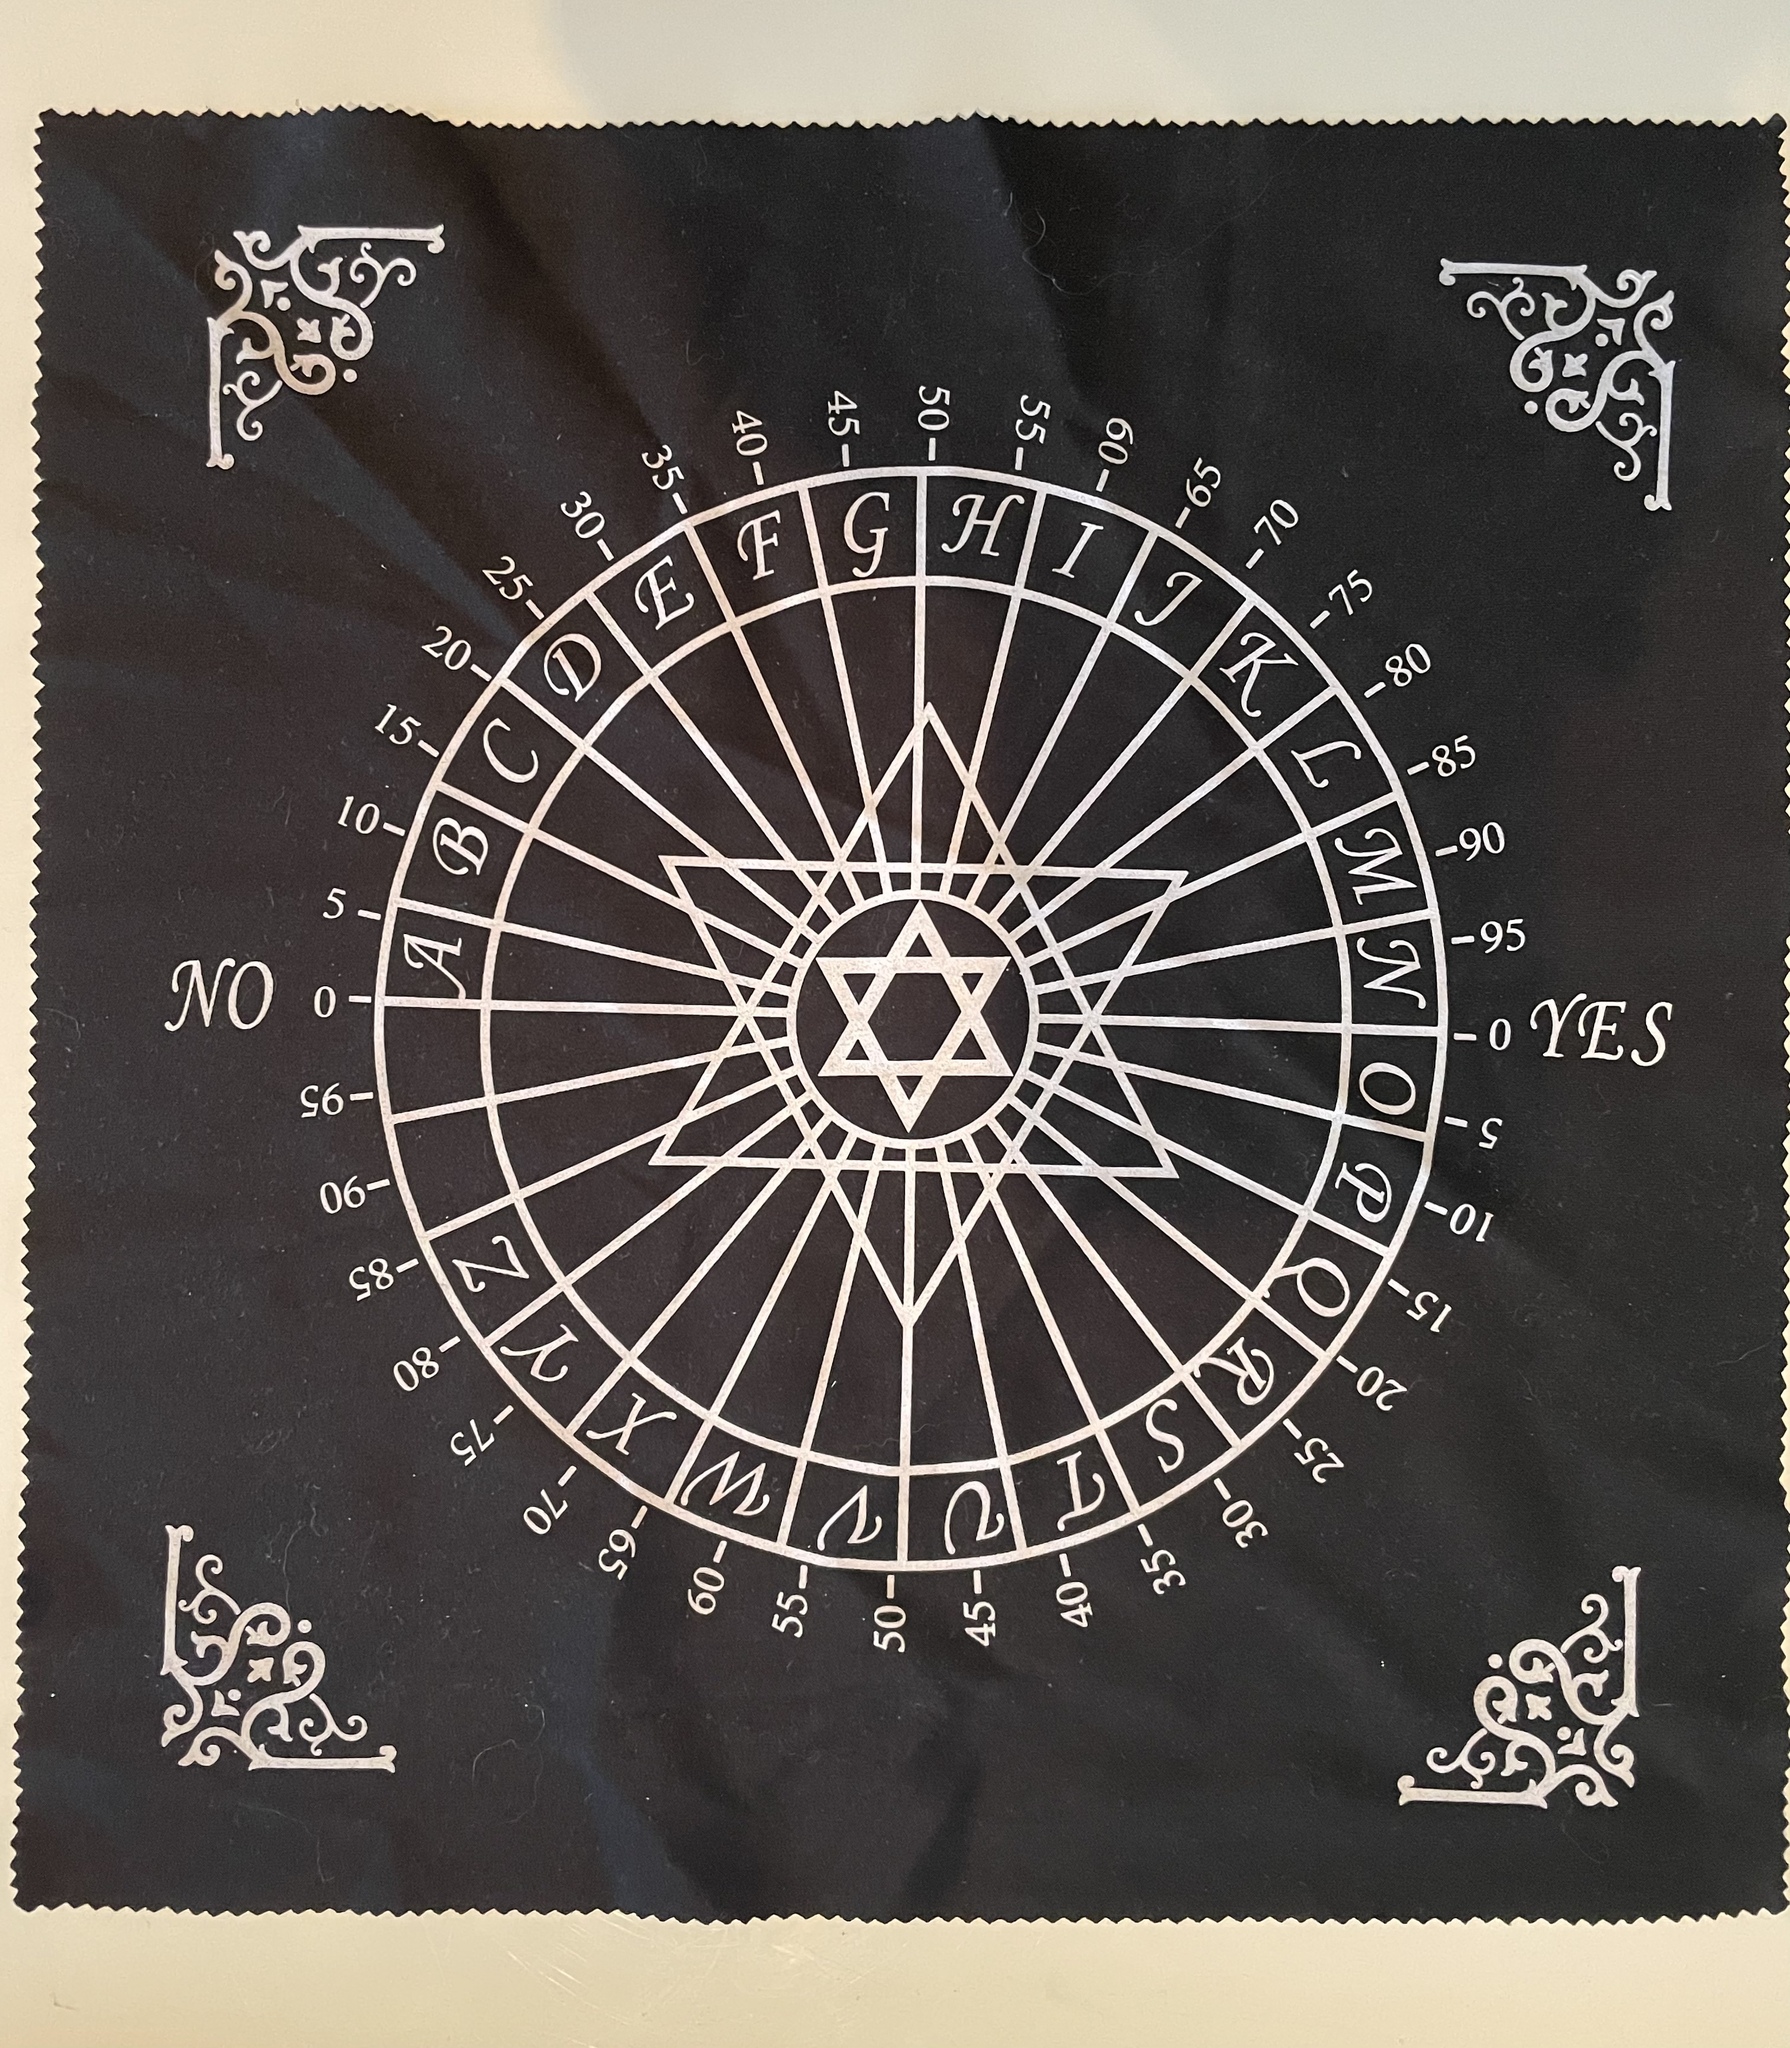 På bilden visas en pendelmatta i svart med vita markeringar för ja nej kanske samt pentagramsymbol